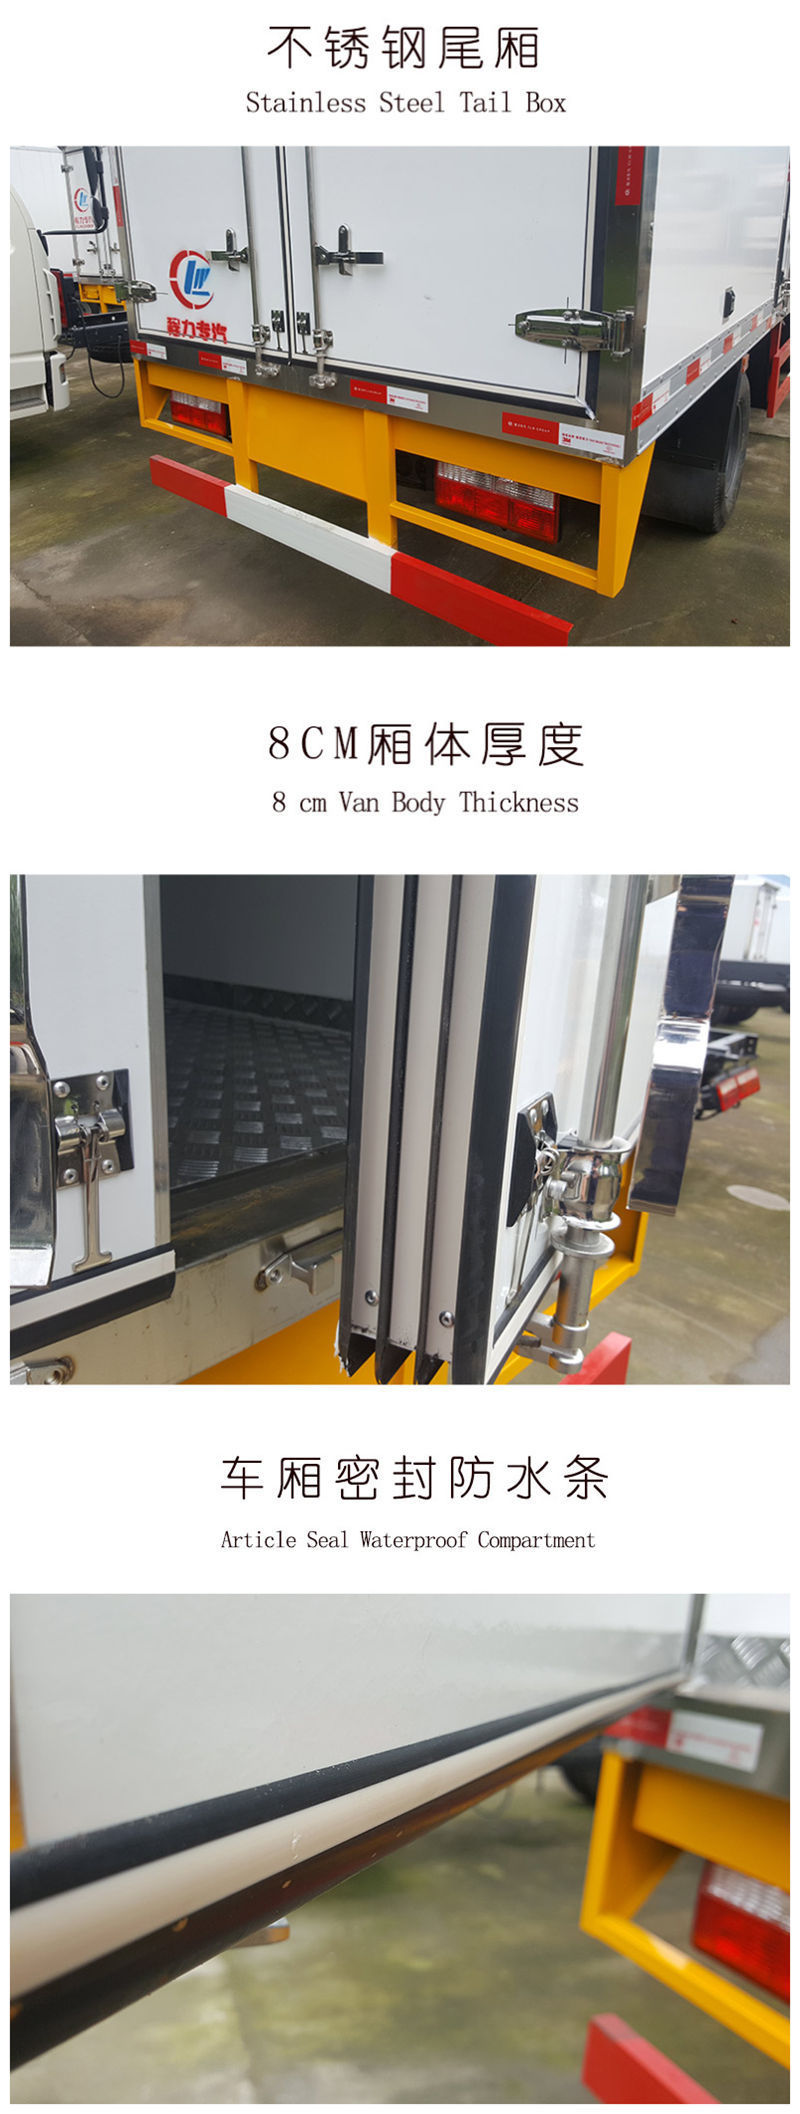 厂家直销江铃小龙虾专用冷藏车 保温运输车示例图15